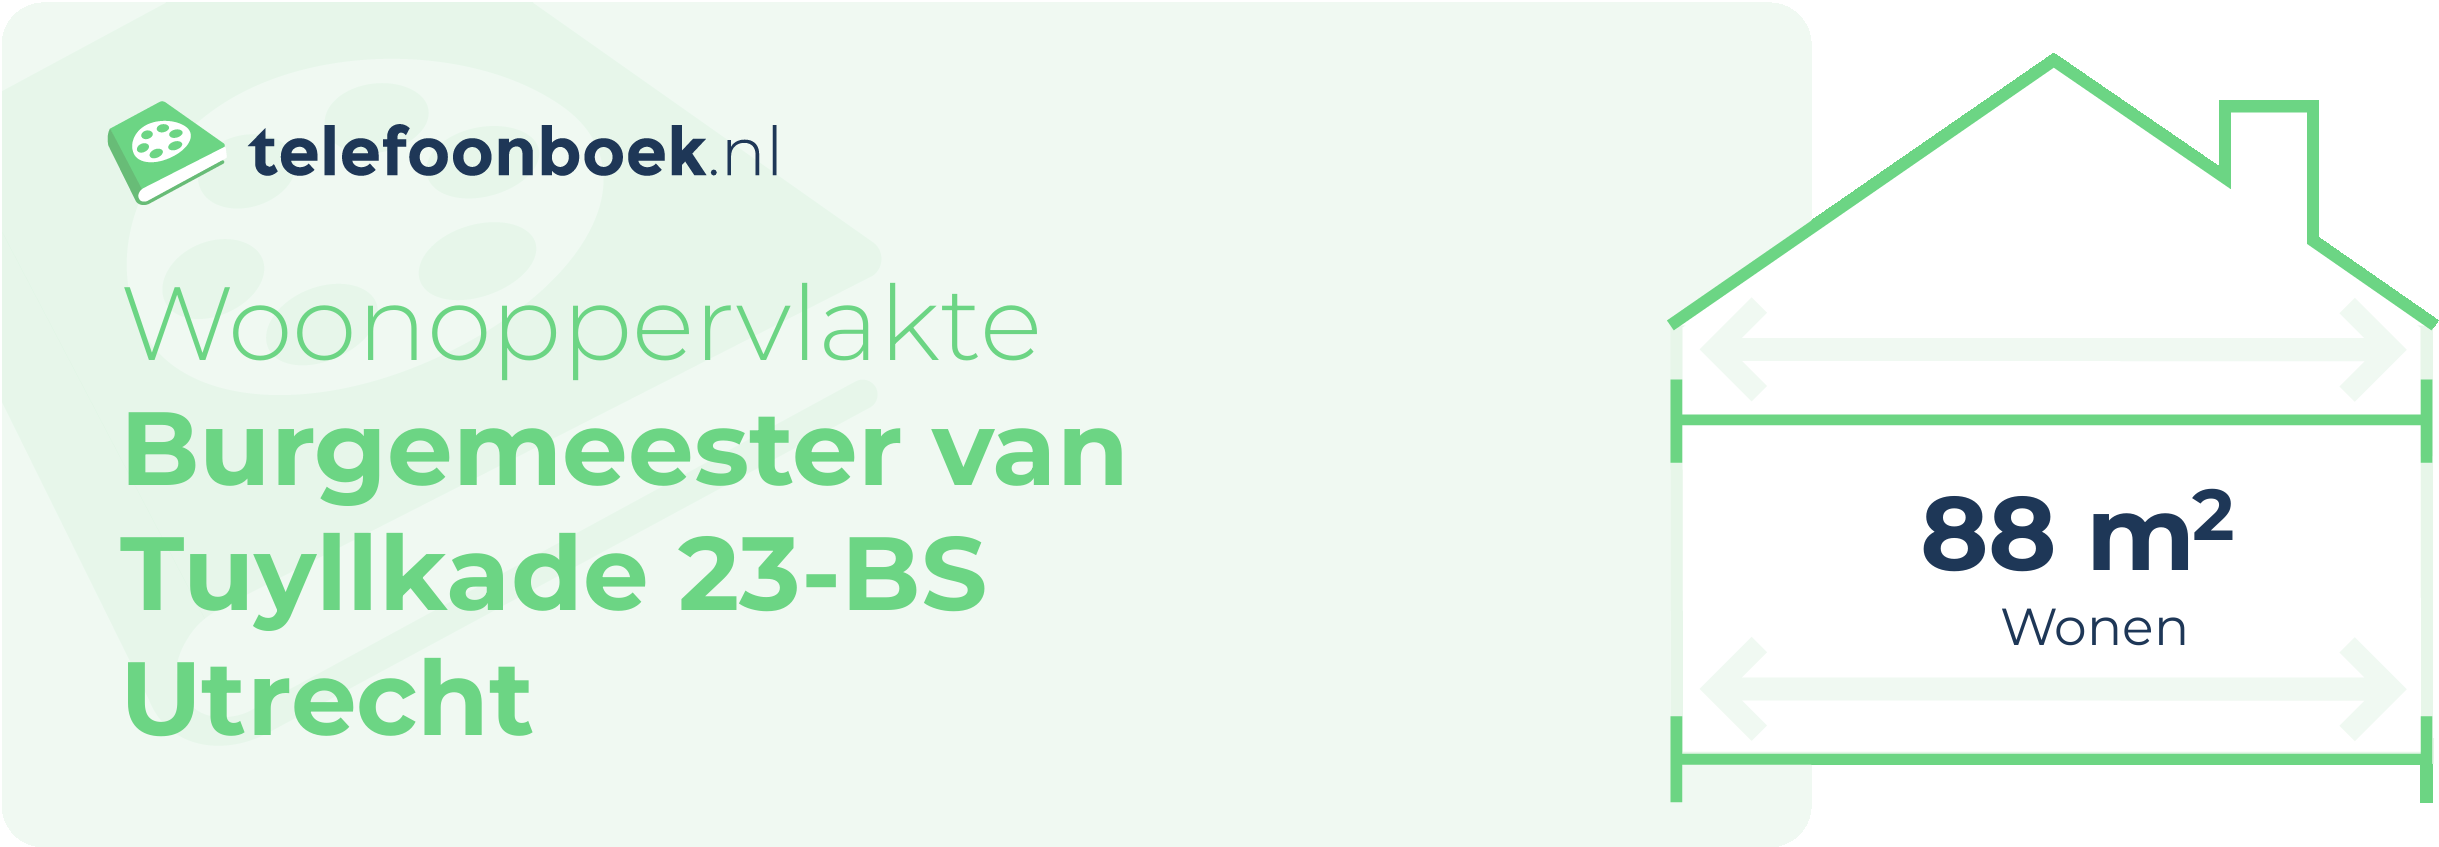 Woonoppervlakte Burgemeester Van Tuyllkade 23-BS Utrecht